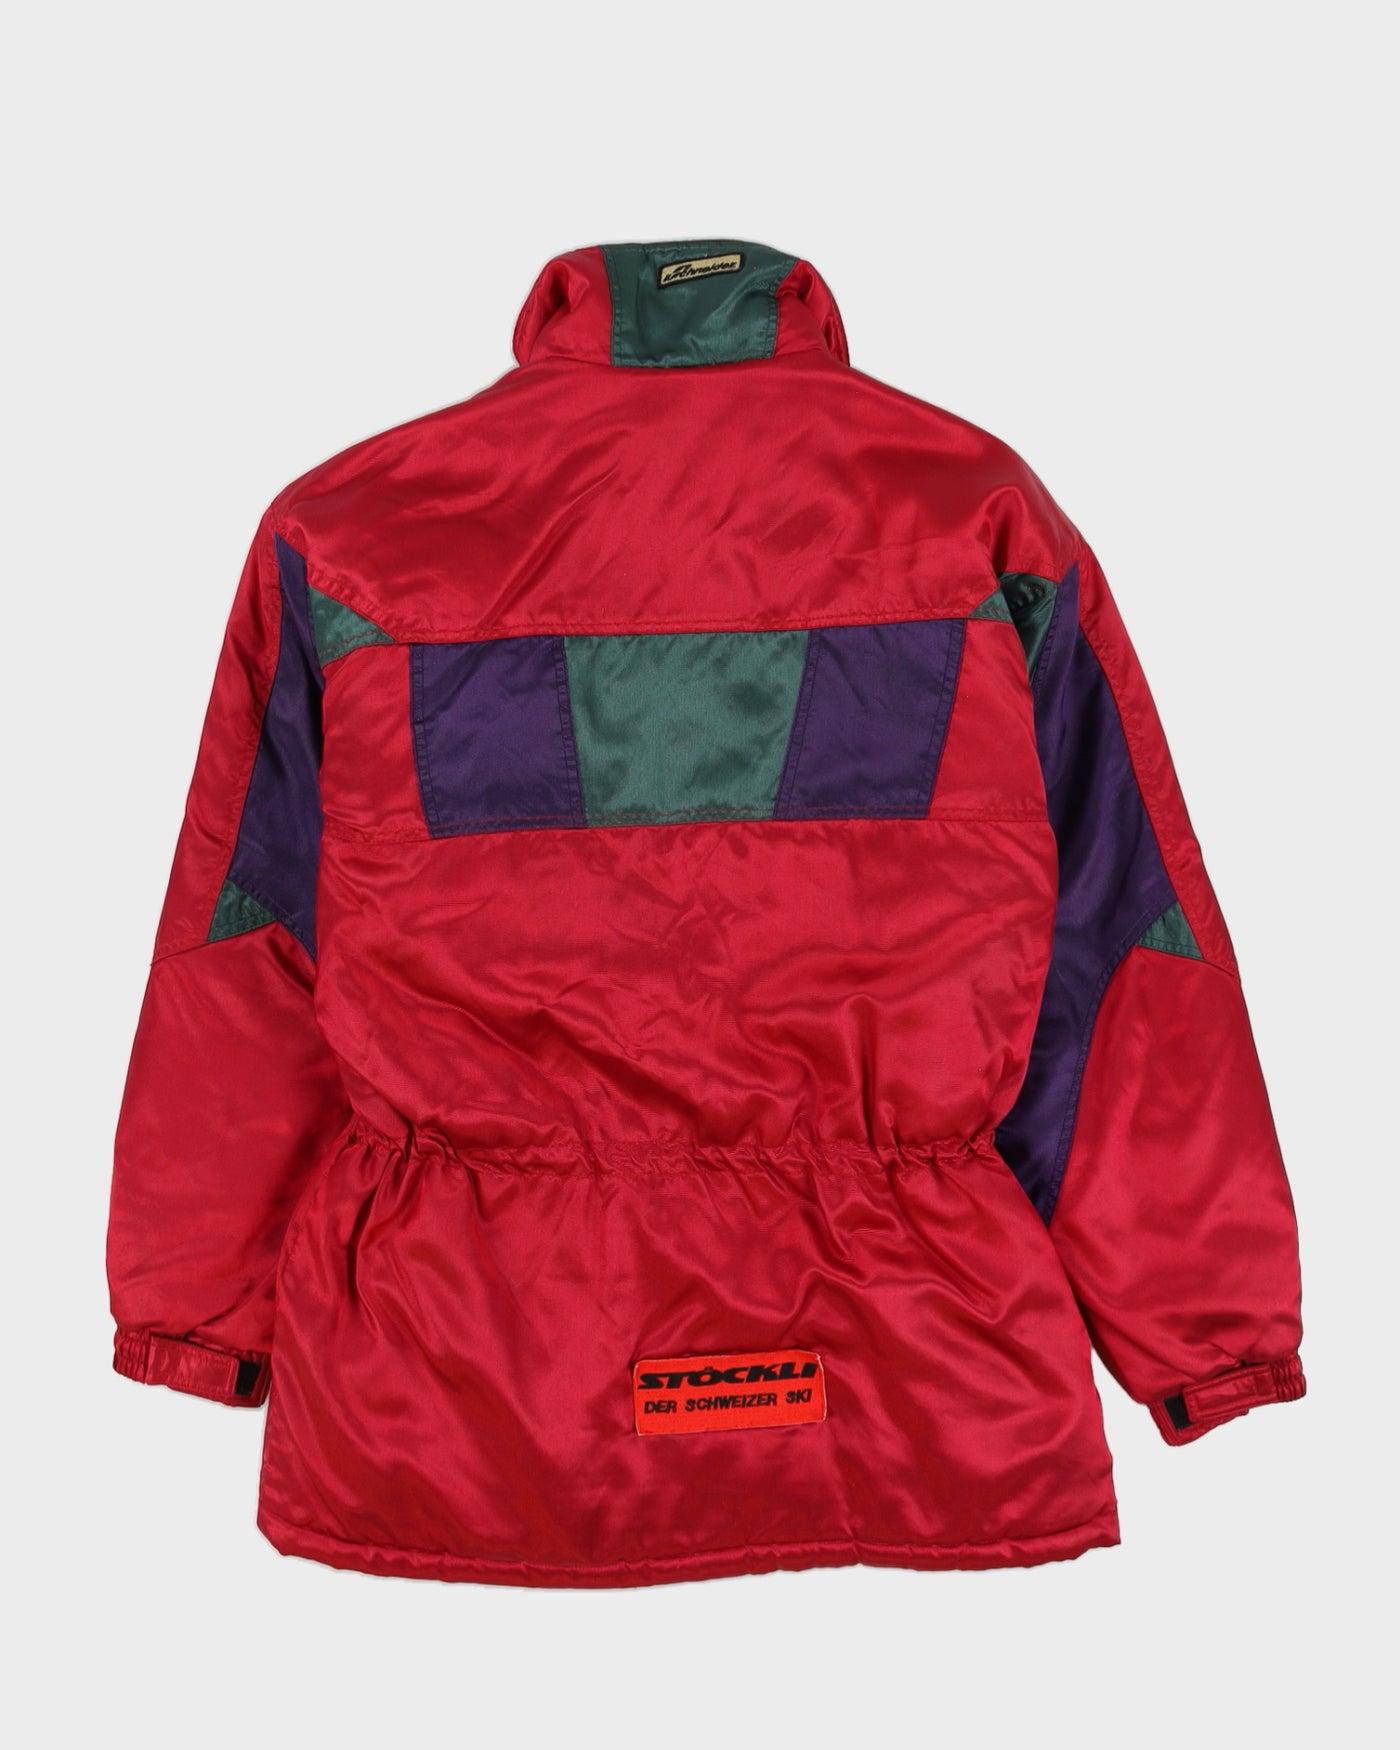 Vintage 90s Schneider Ski Multi-coloured Jacket - L